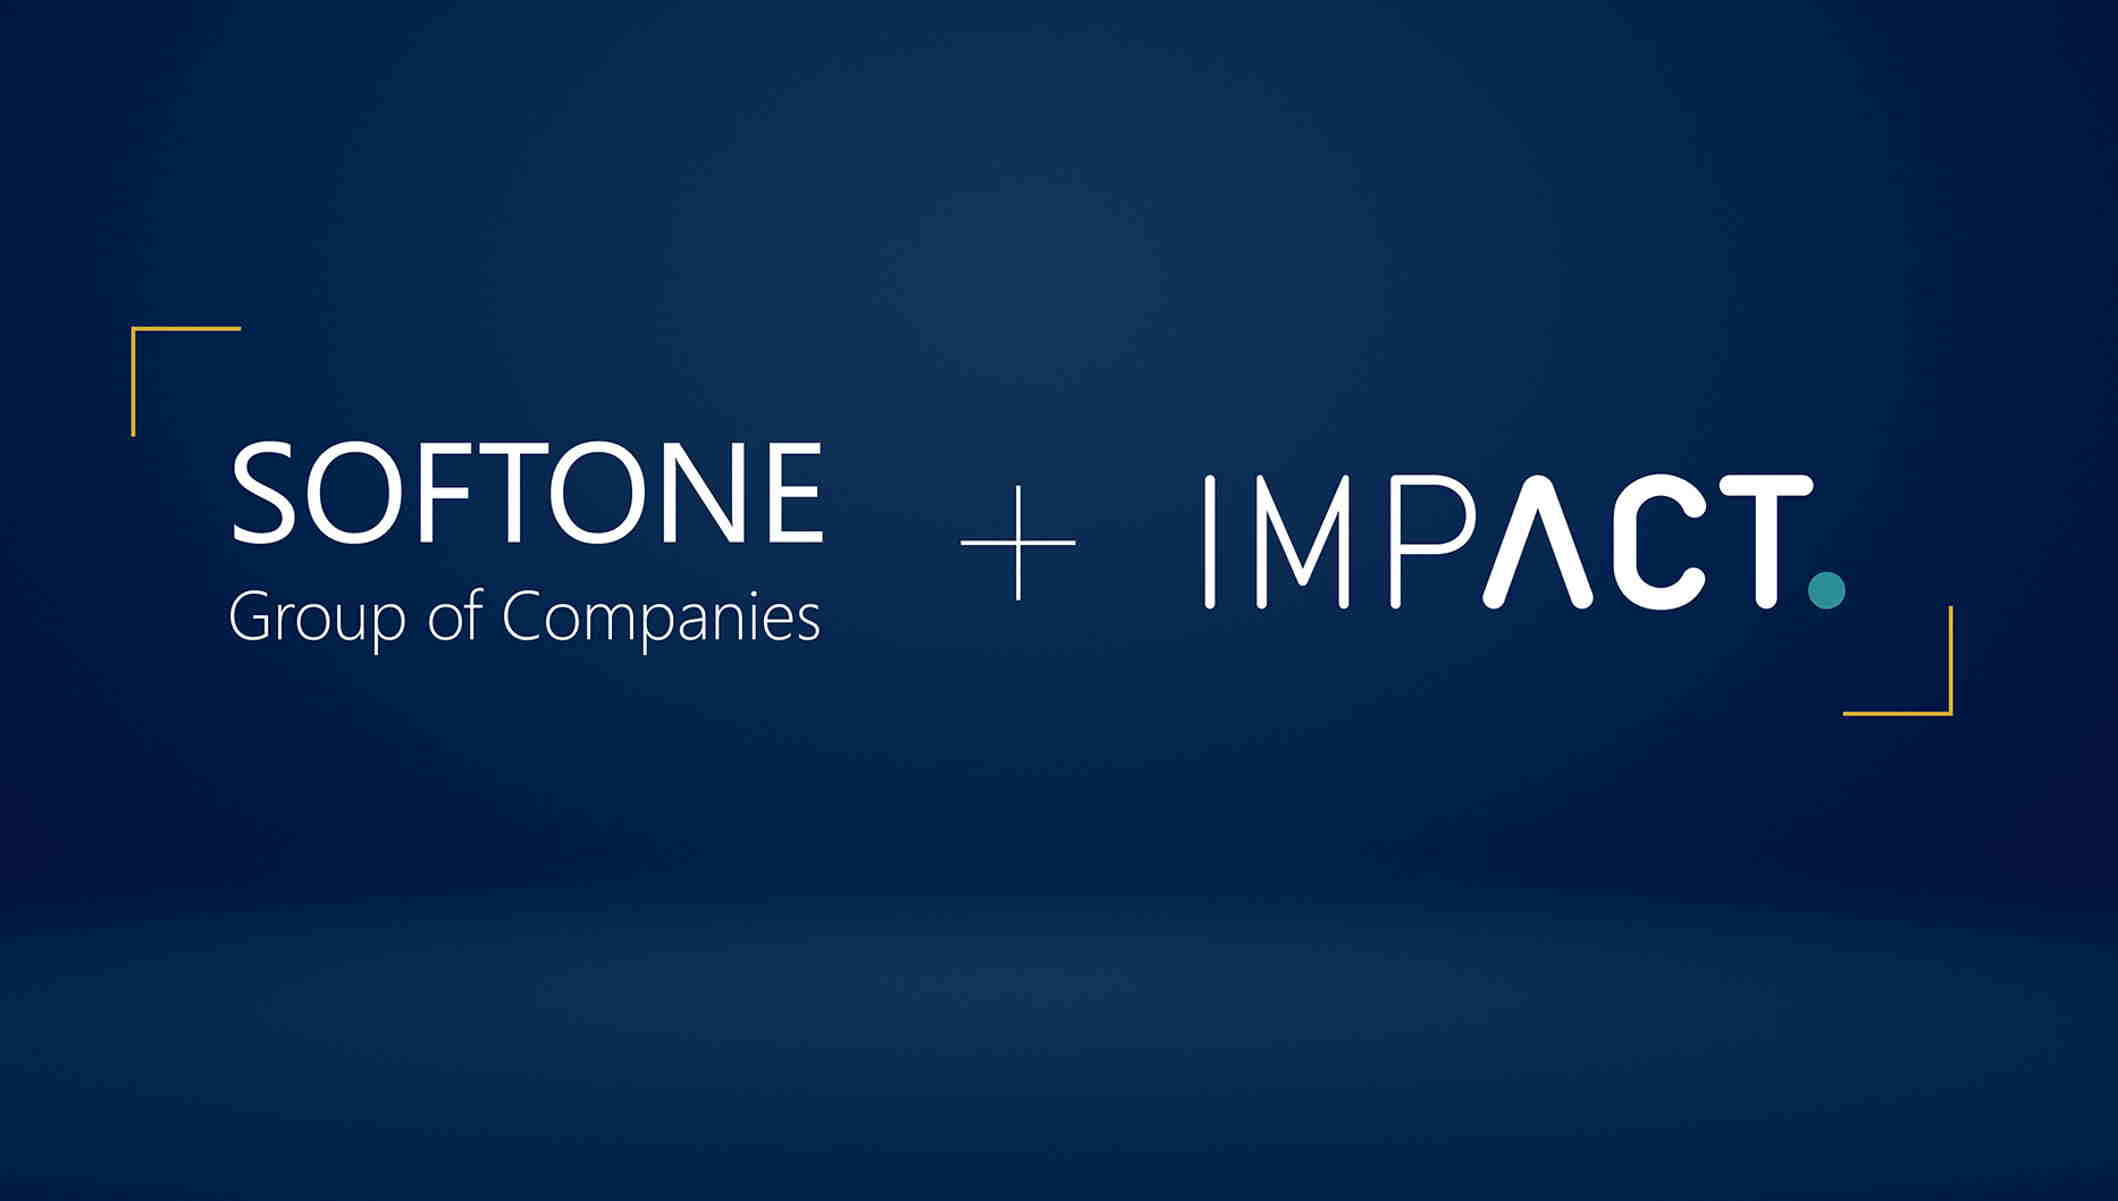 Τεχνολογικό deal: Οι SoftOne και Impact ενώνουν τις δυνάμεις τους – Τι σηματοδοτεί η συμφωνία